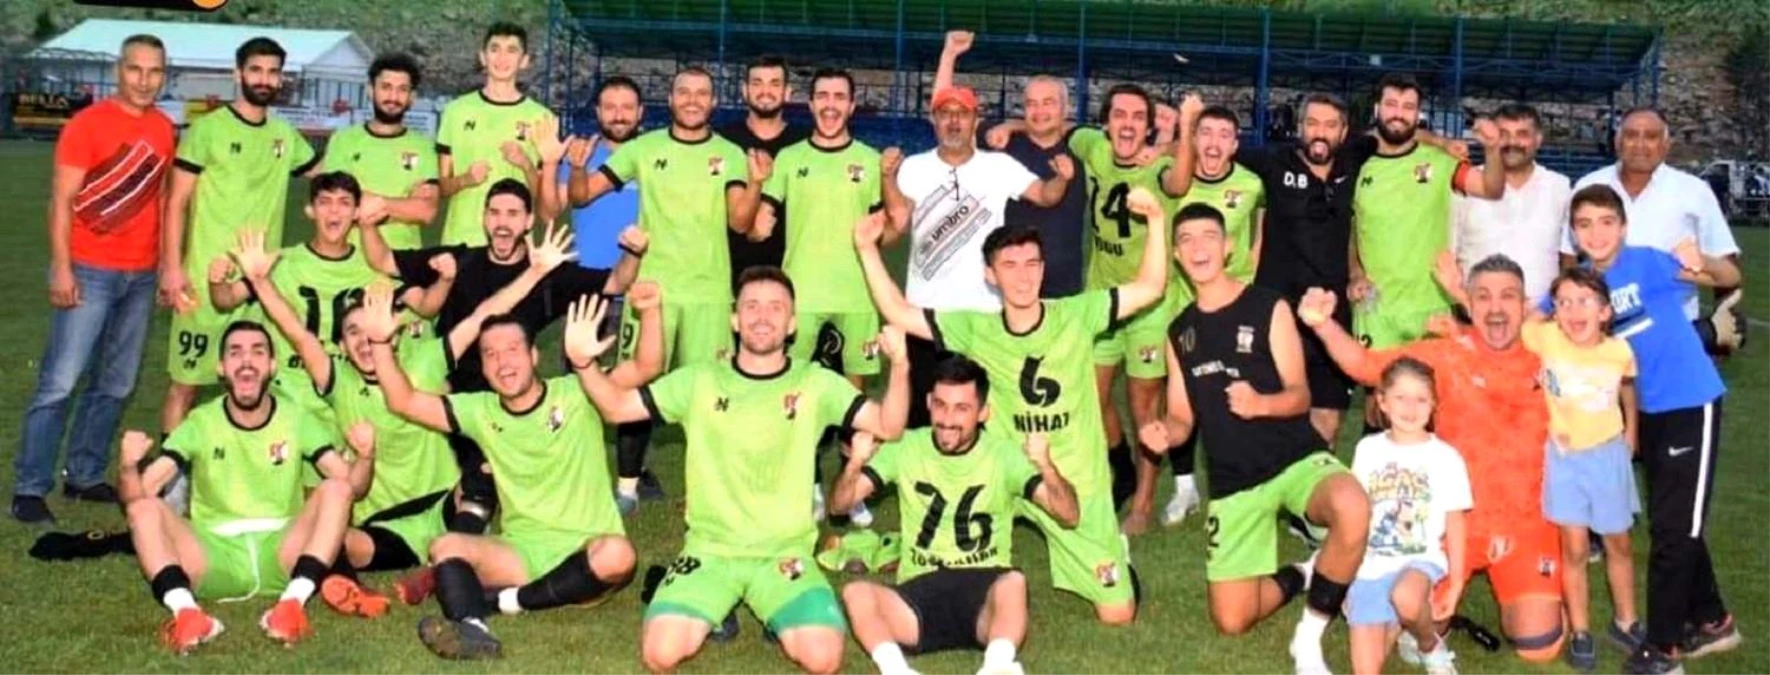 Kızıldağ'da şampiyon Döşekevi Kuşçusofuluspor oldu